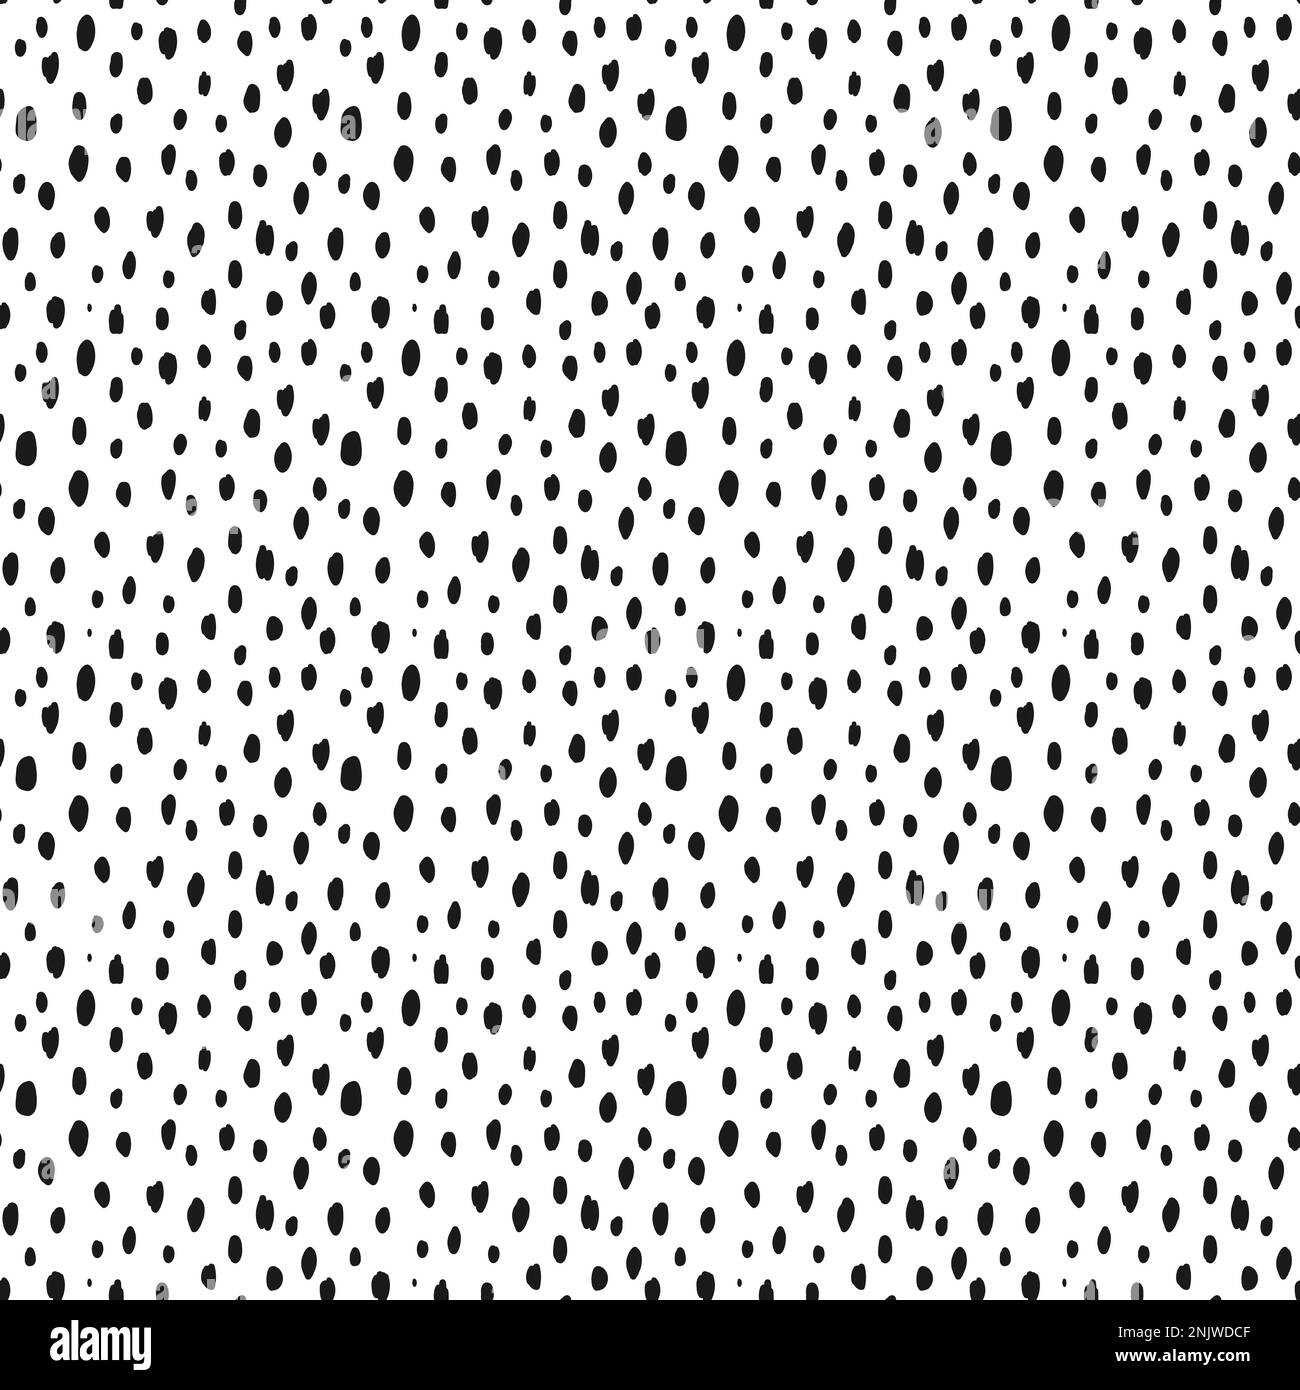 Nahtlos gesprenkeltes Muster mit von der Hand gezeichneten schwarzen Punkten auf weißem Hintergrund. Polka Dot, schwarz auf weiß. Vektordarstellung. Stock Vektor